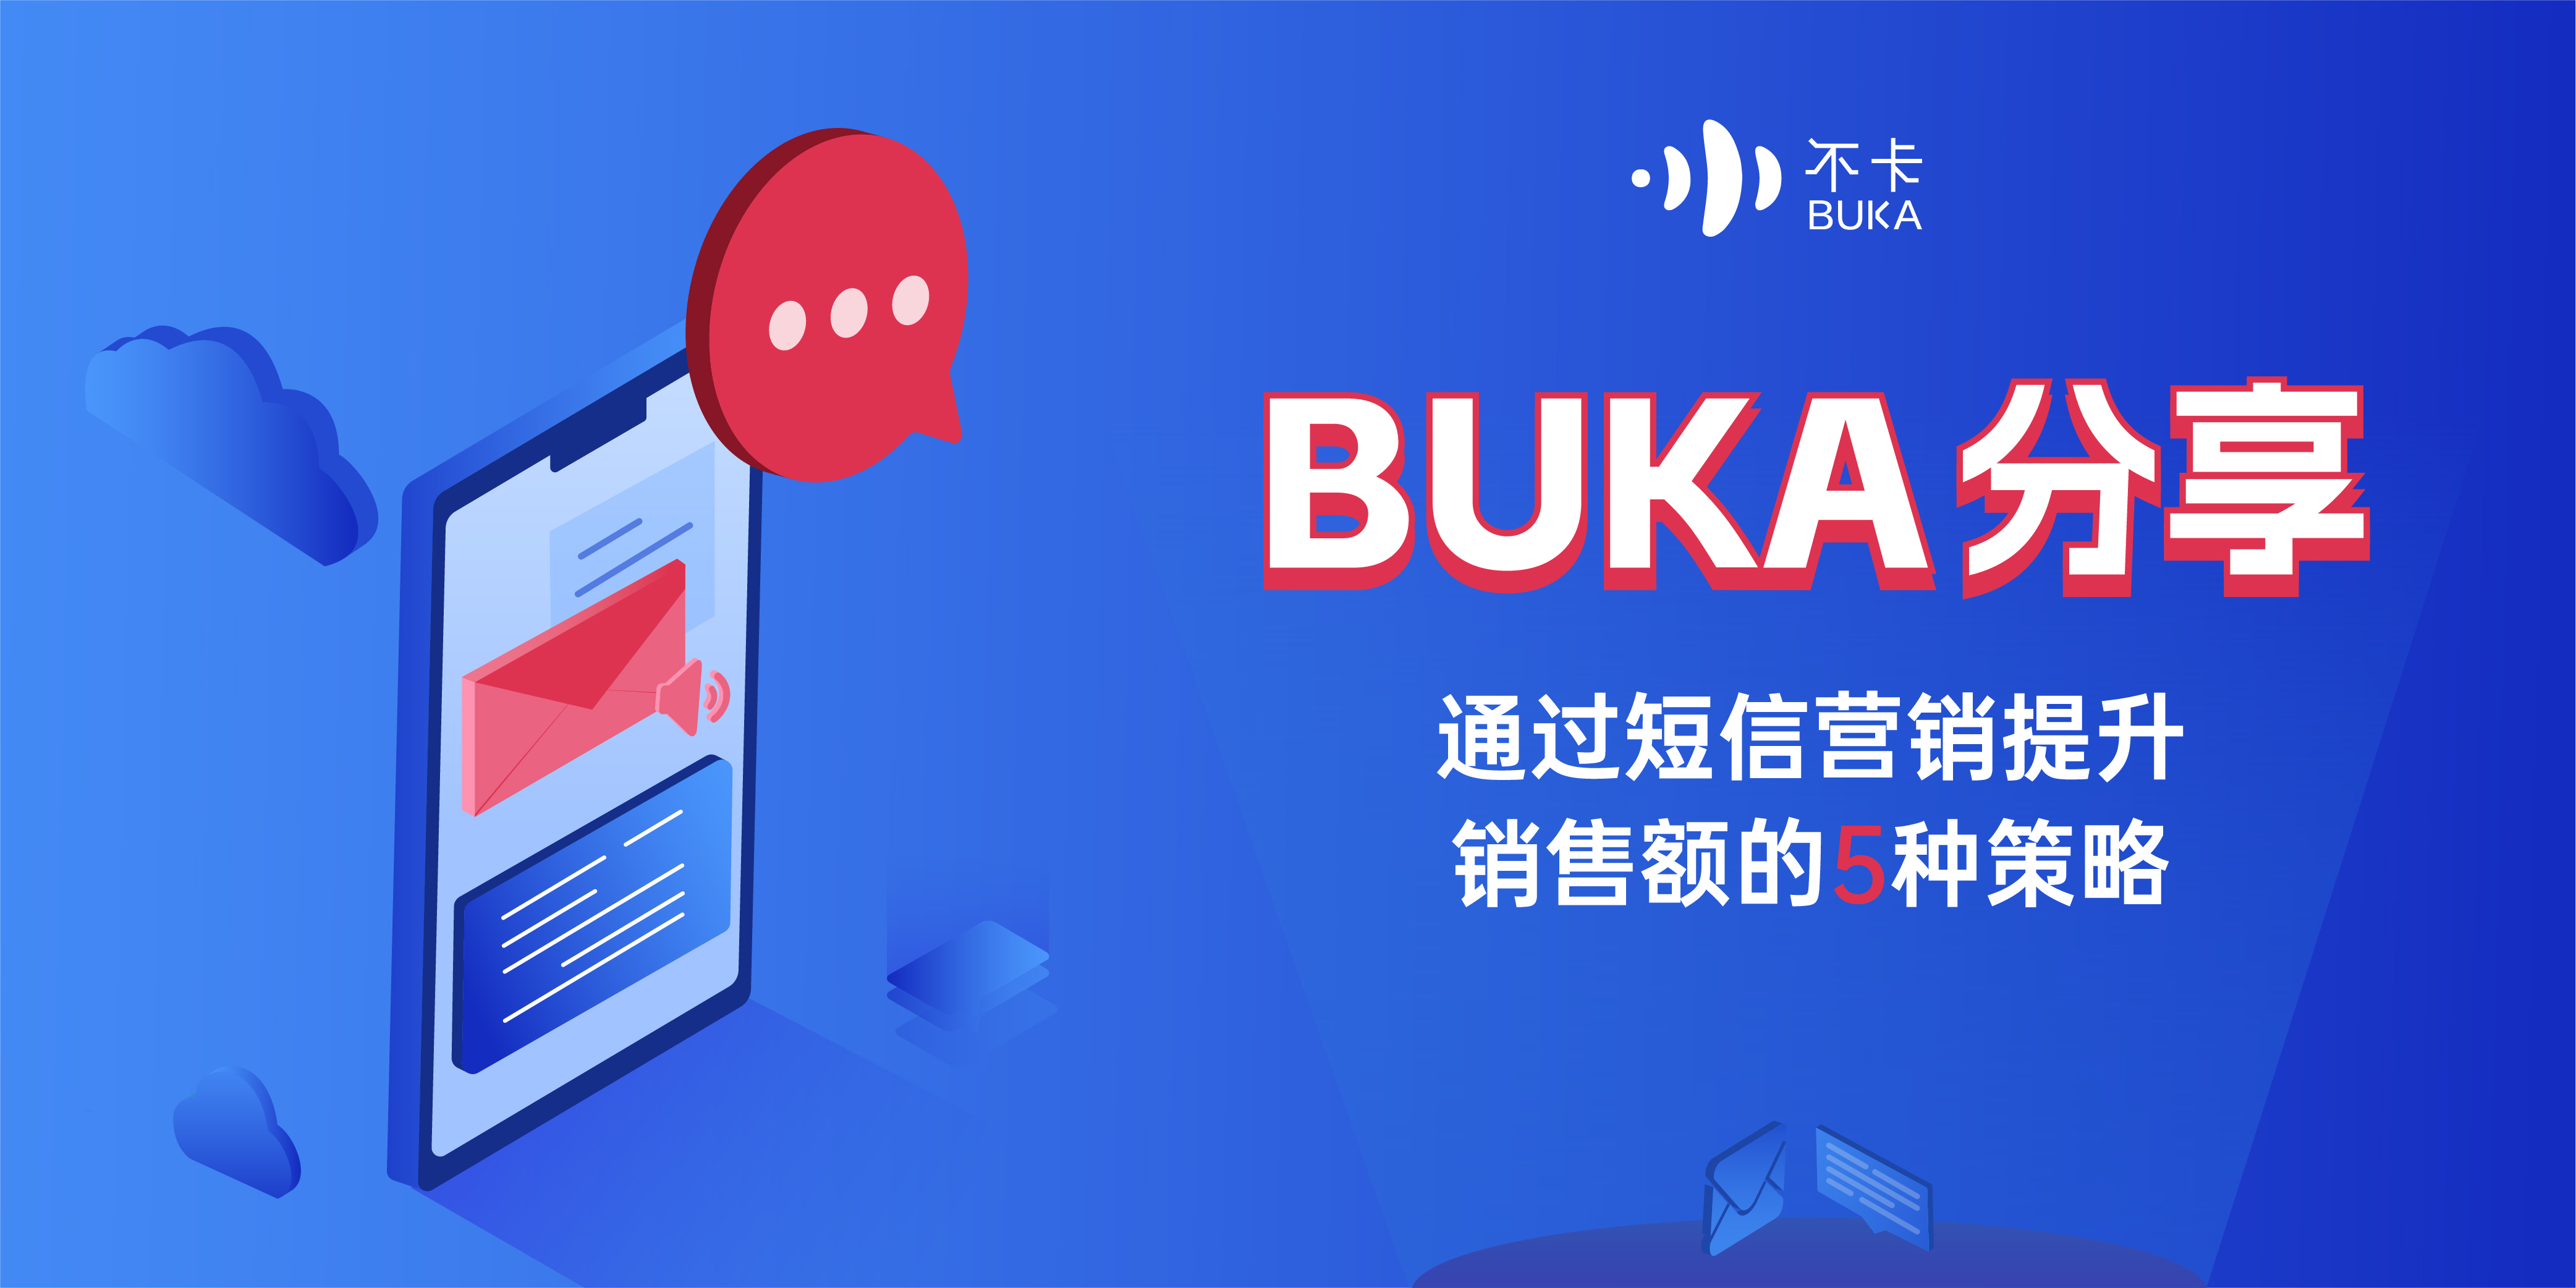 BUKA分享 | 通过短信营销提升销售额的5种策略